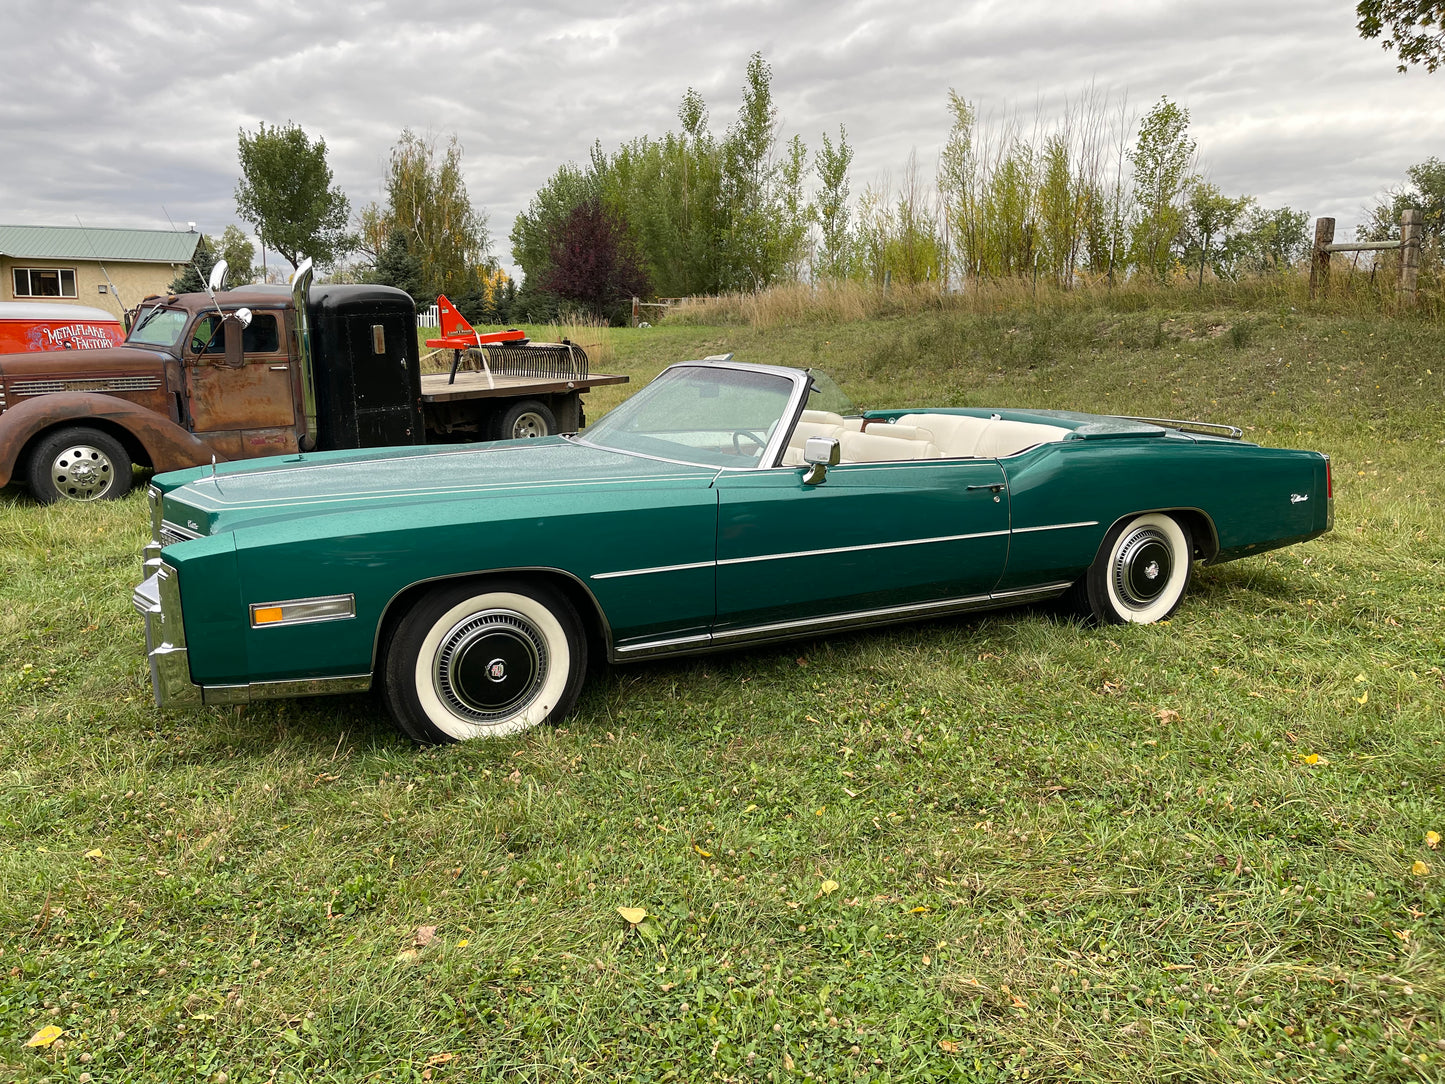 1976 Cadillac El Dorado convertible